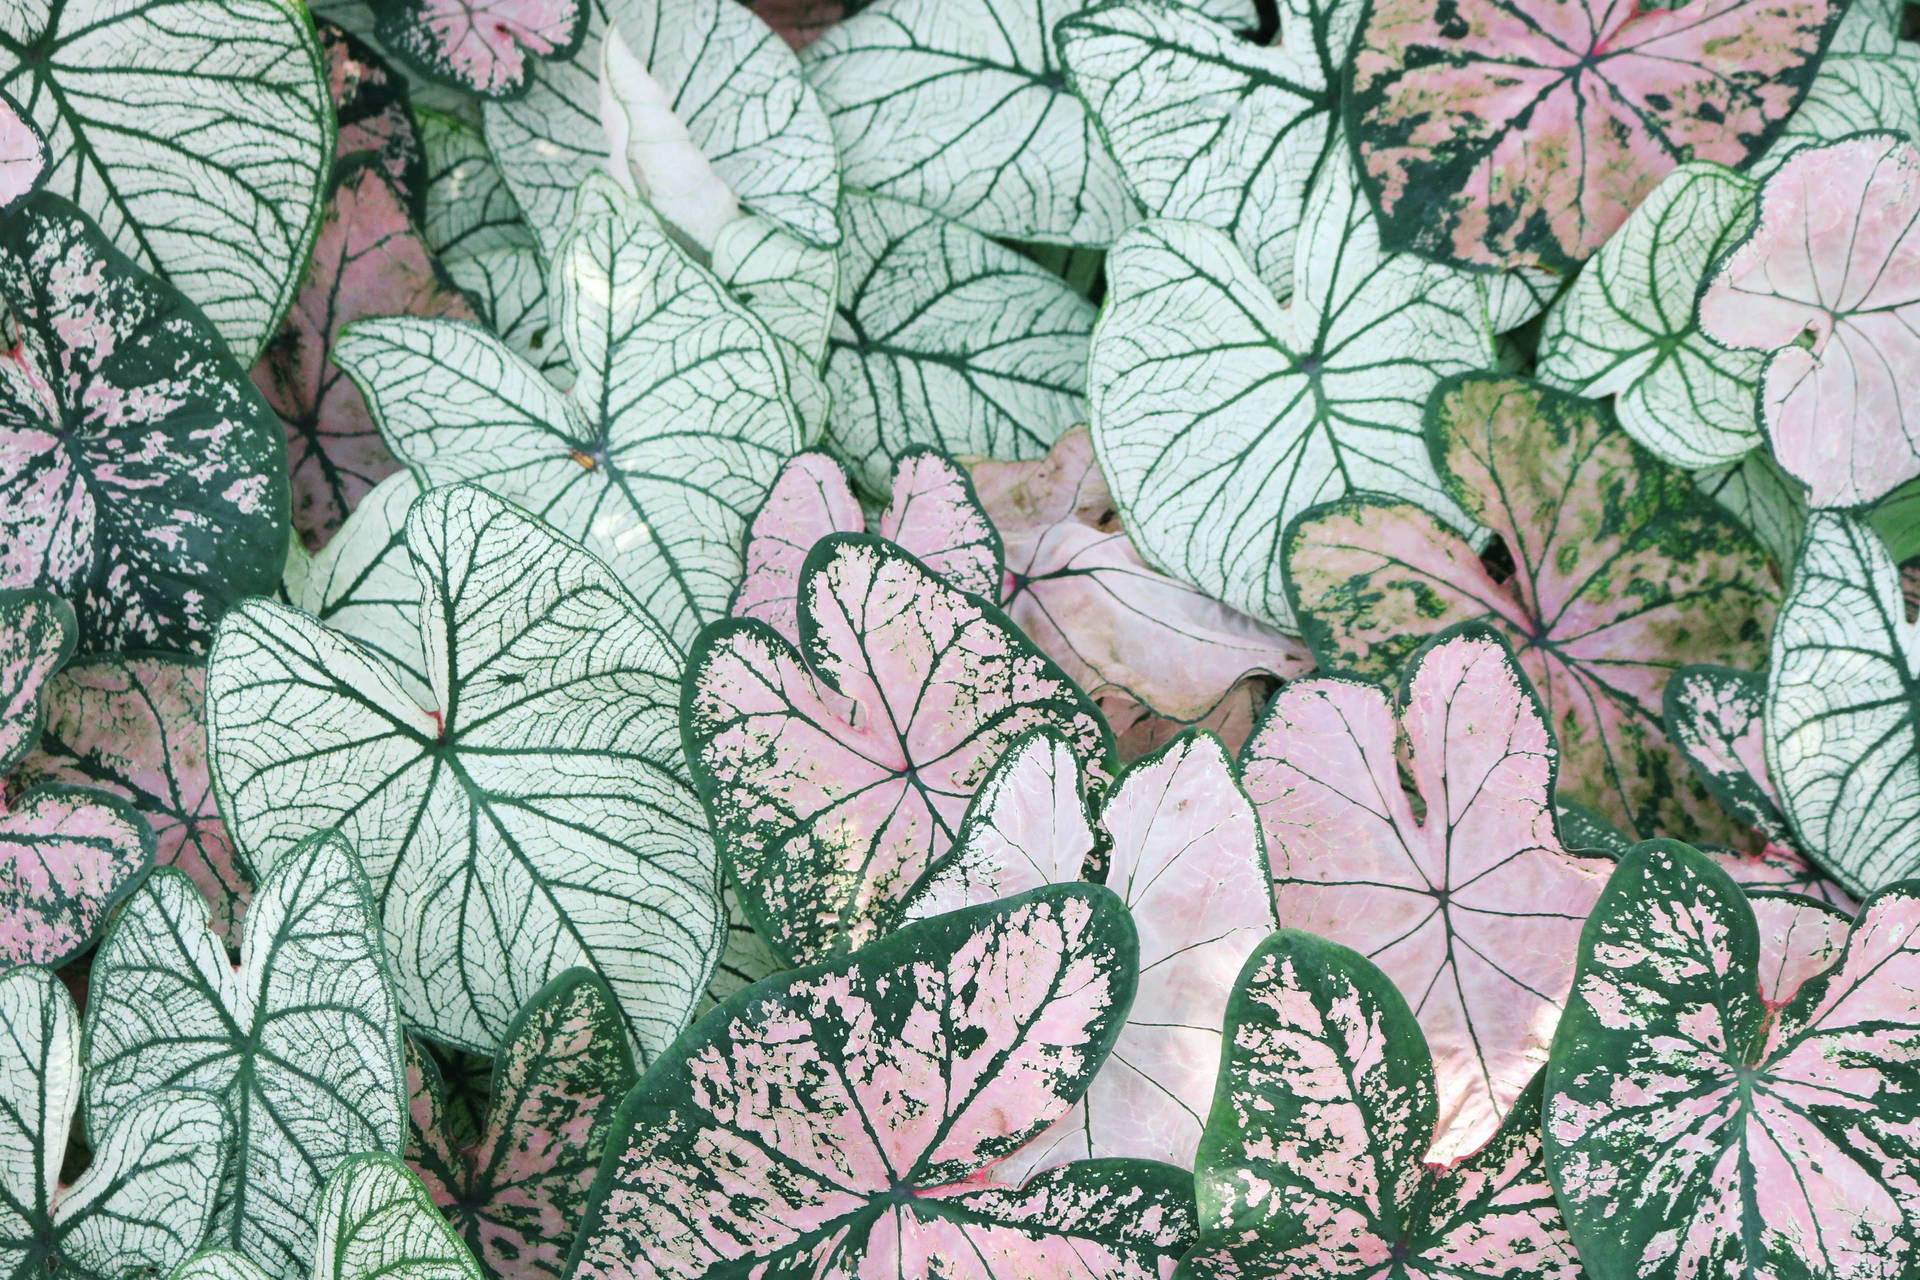 Caladium Leaves Plant Aesthetic